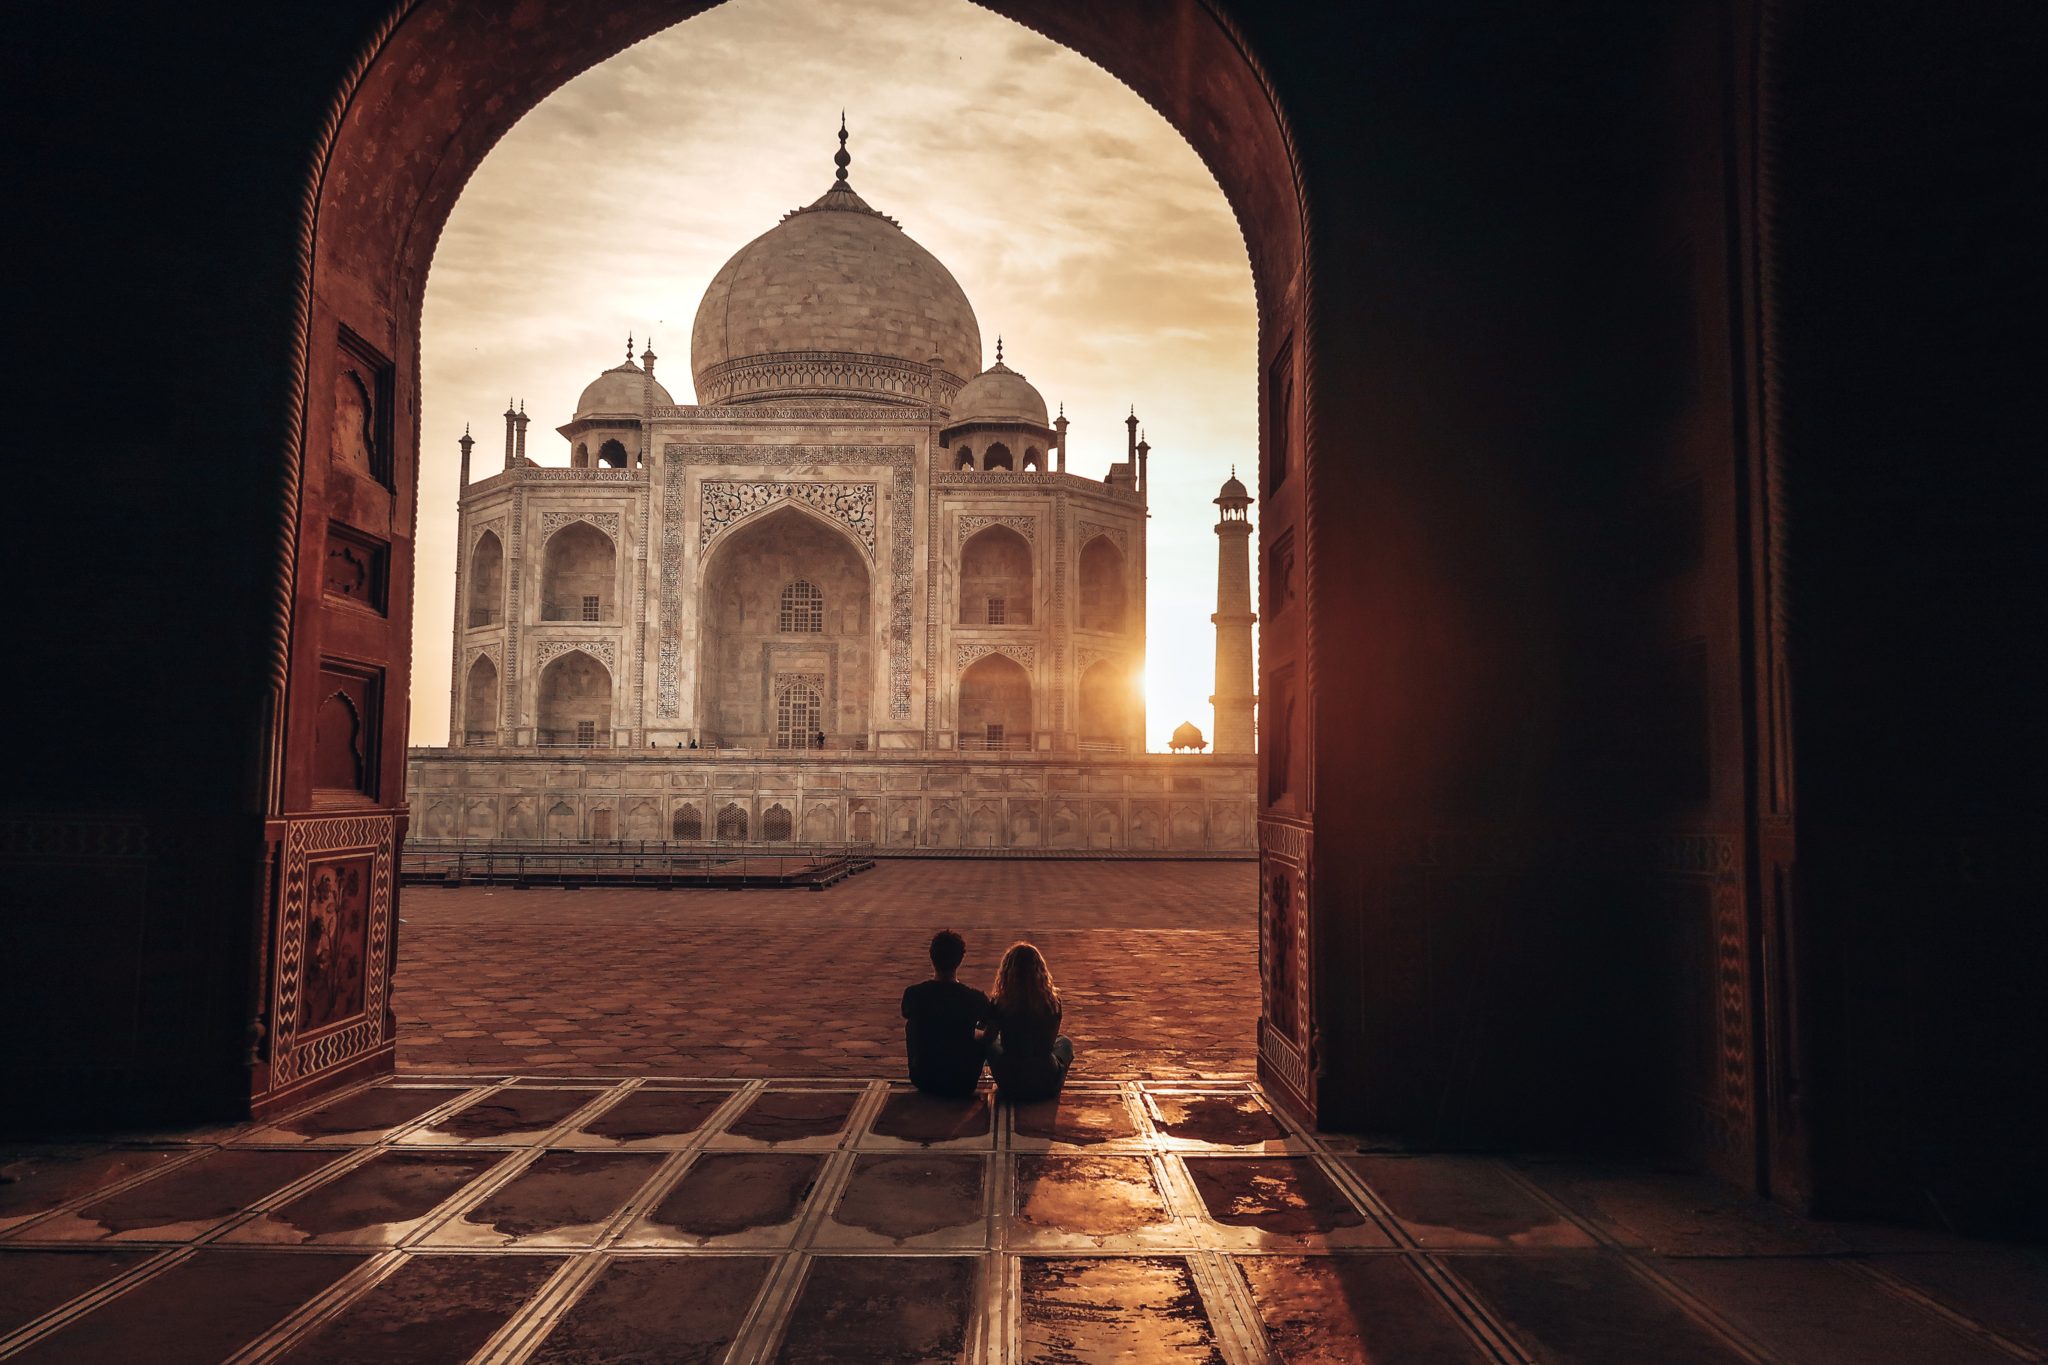 Doorway shot of the Taj Mahal